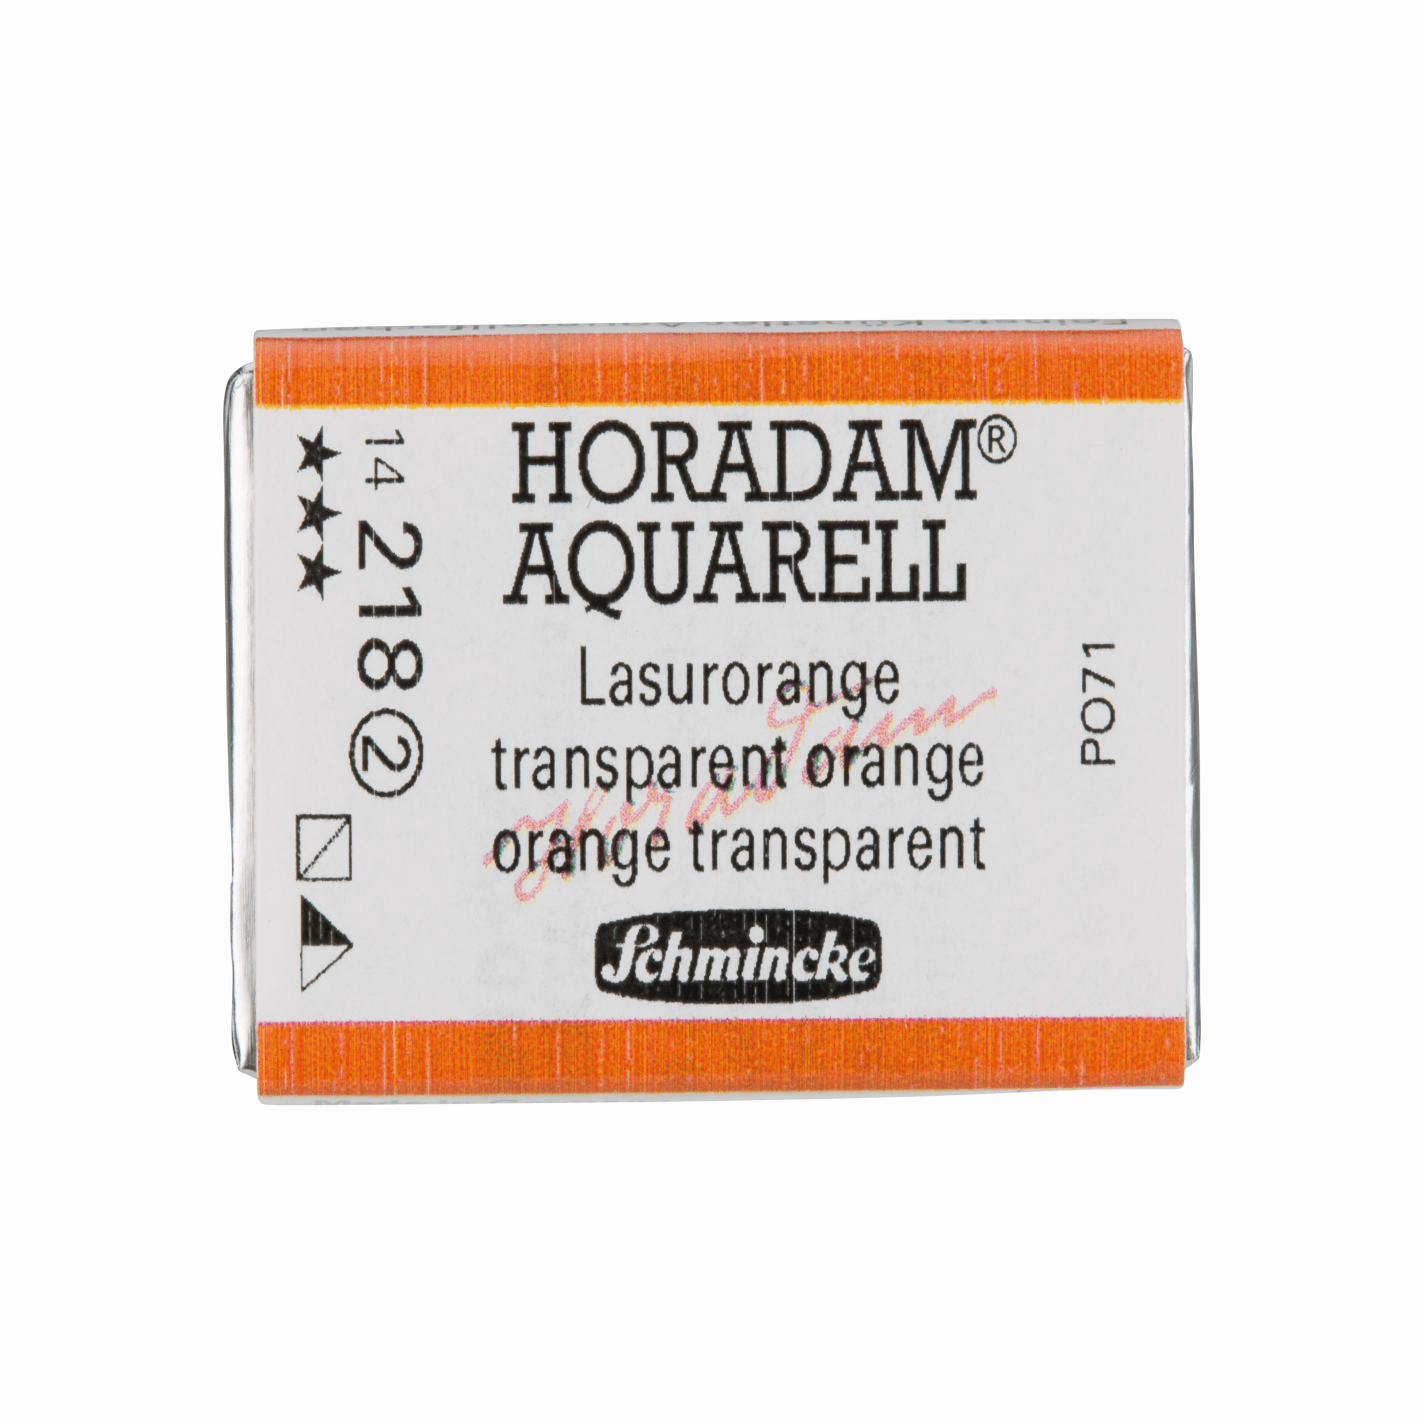 Schmincke Horadam Aquarell pans 1/1 pan Transparent Orange